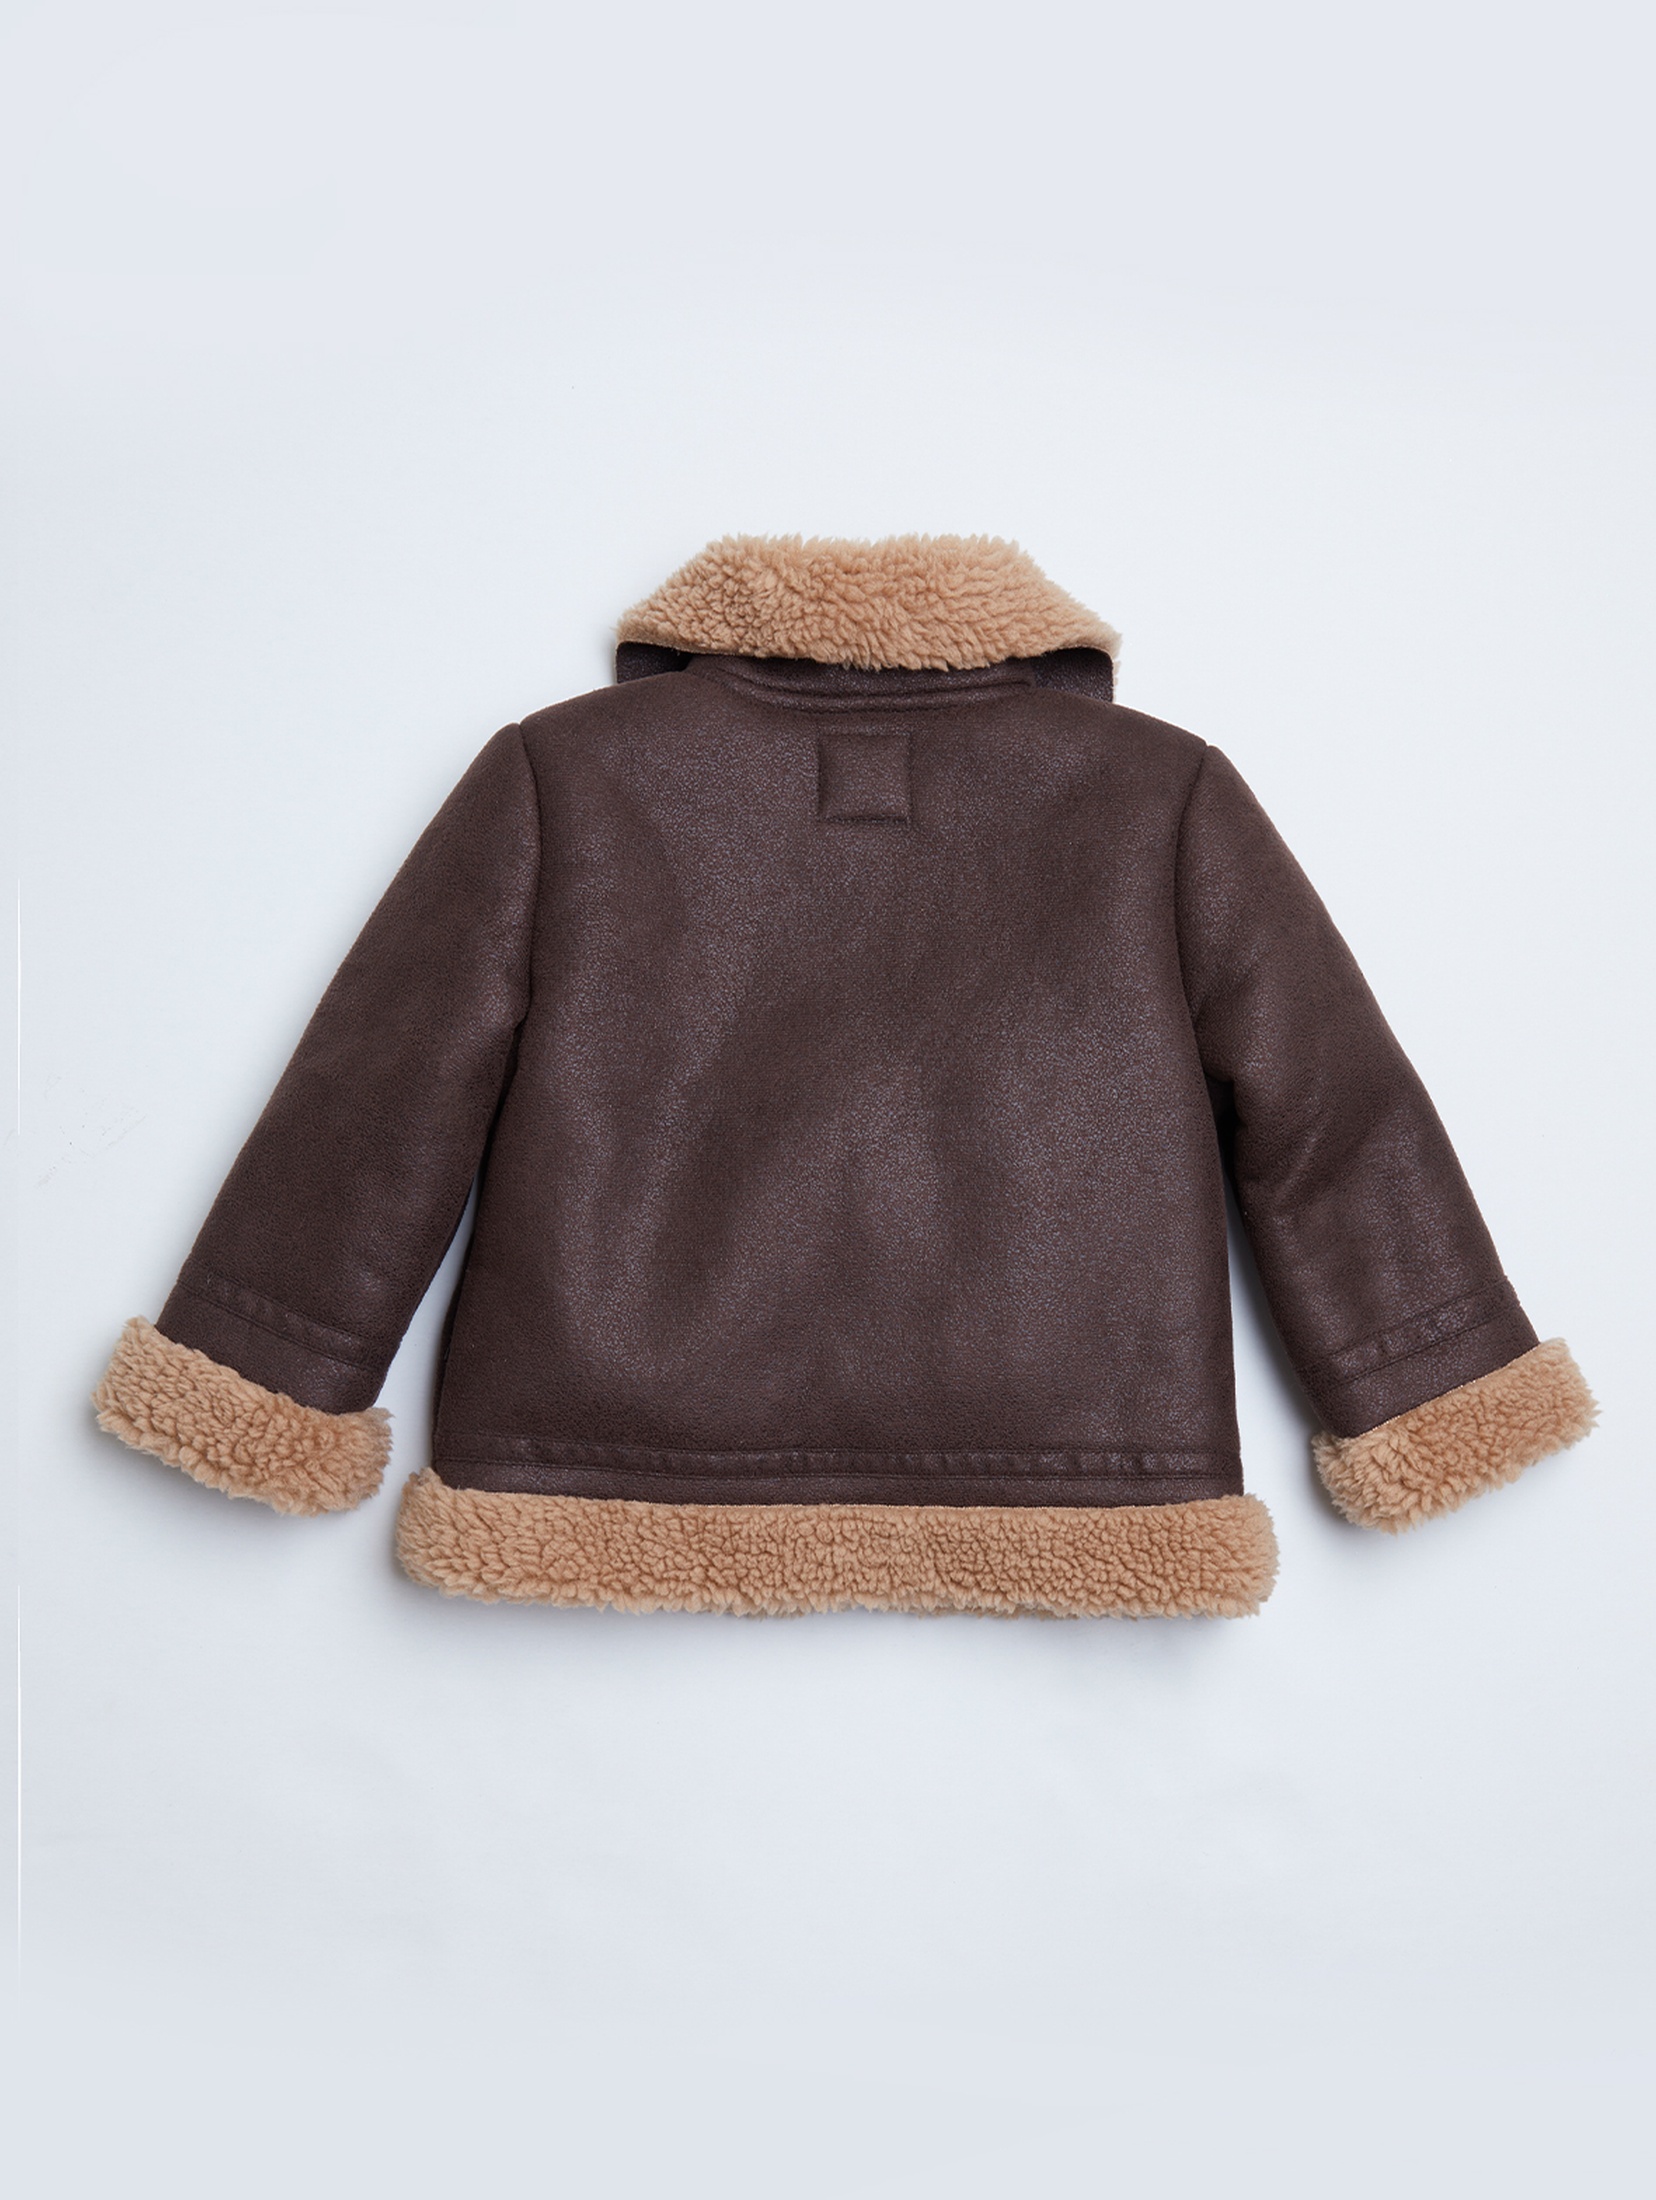 Brązowa ocieplana kurtka ramoneska dla małego dziecka - unisex - Limited Edition